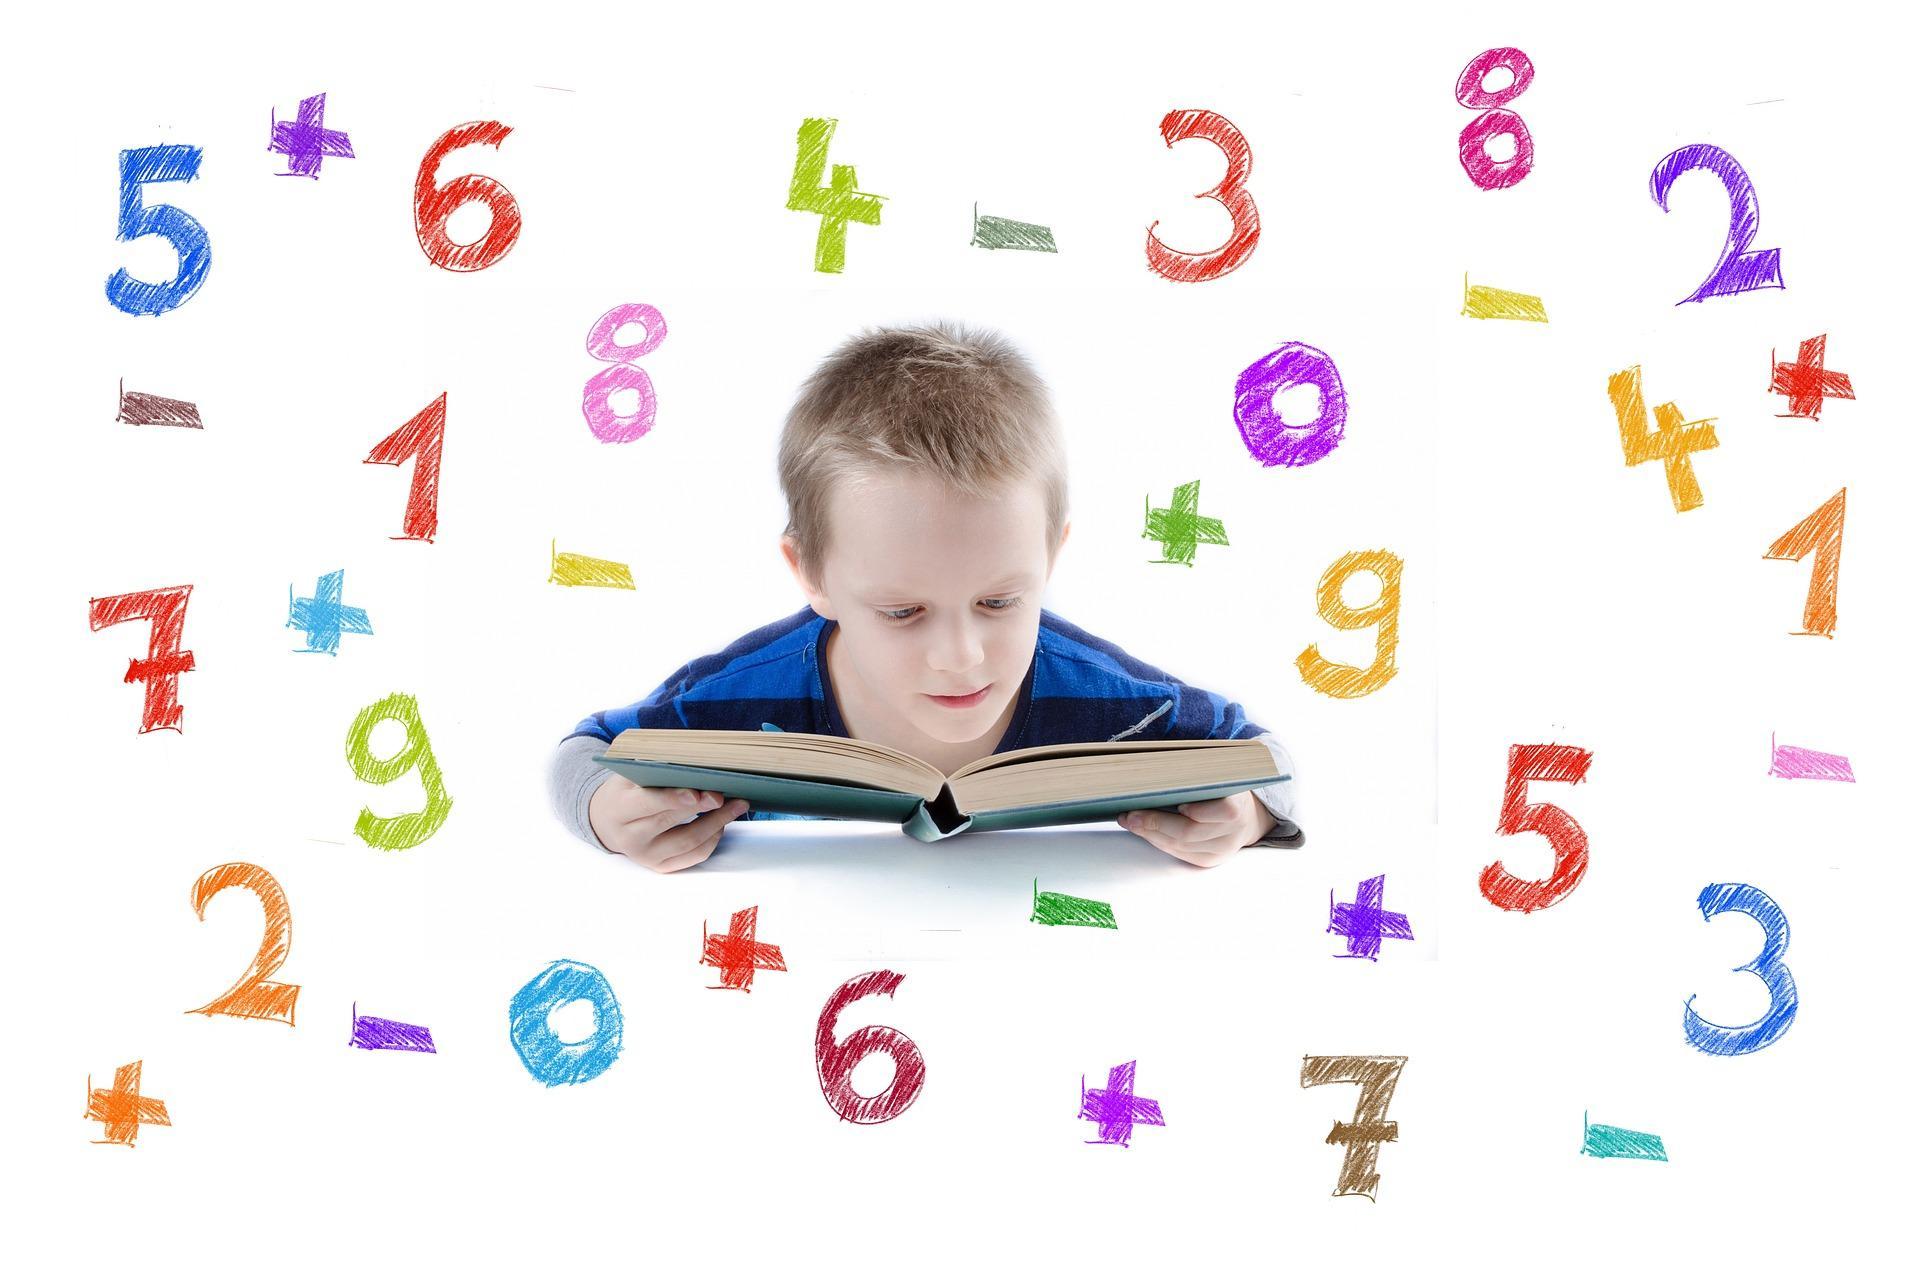 Un enfant lit un livre. Des nombres et des signes opératoires l'entourent.